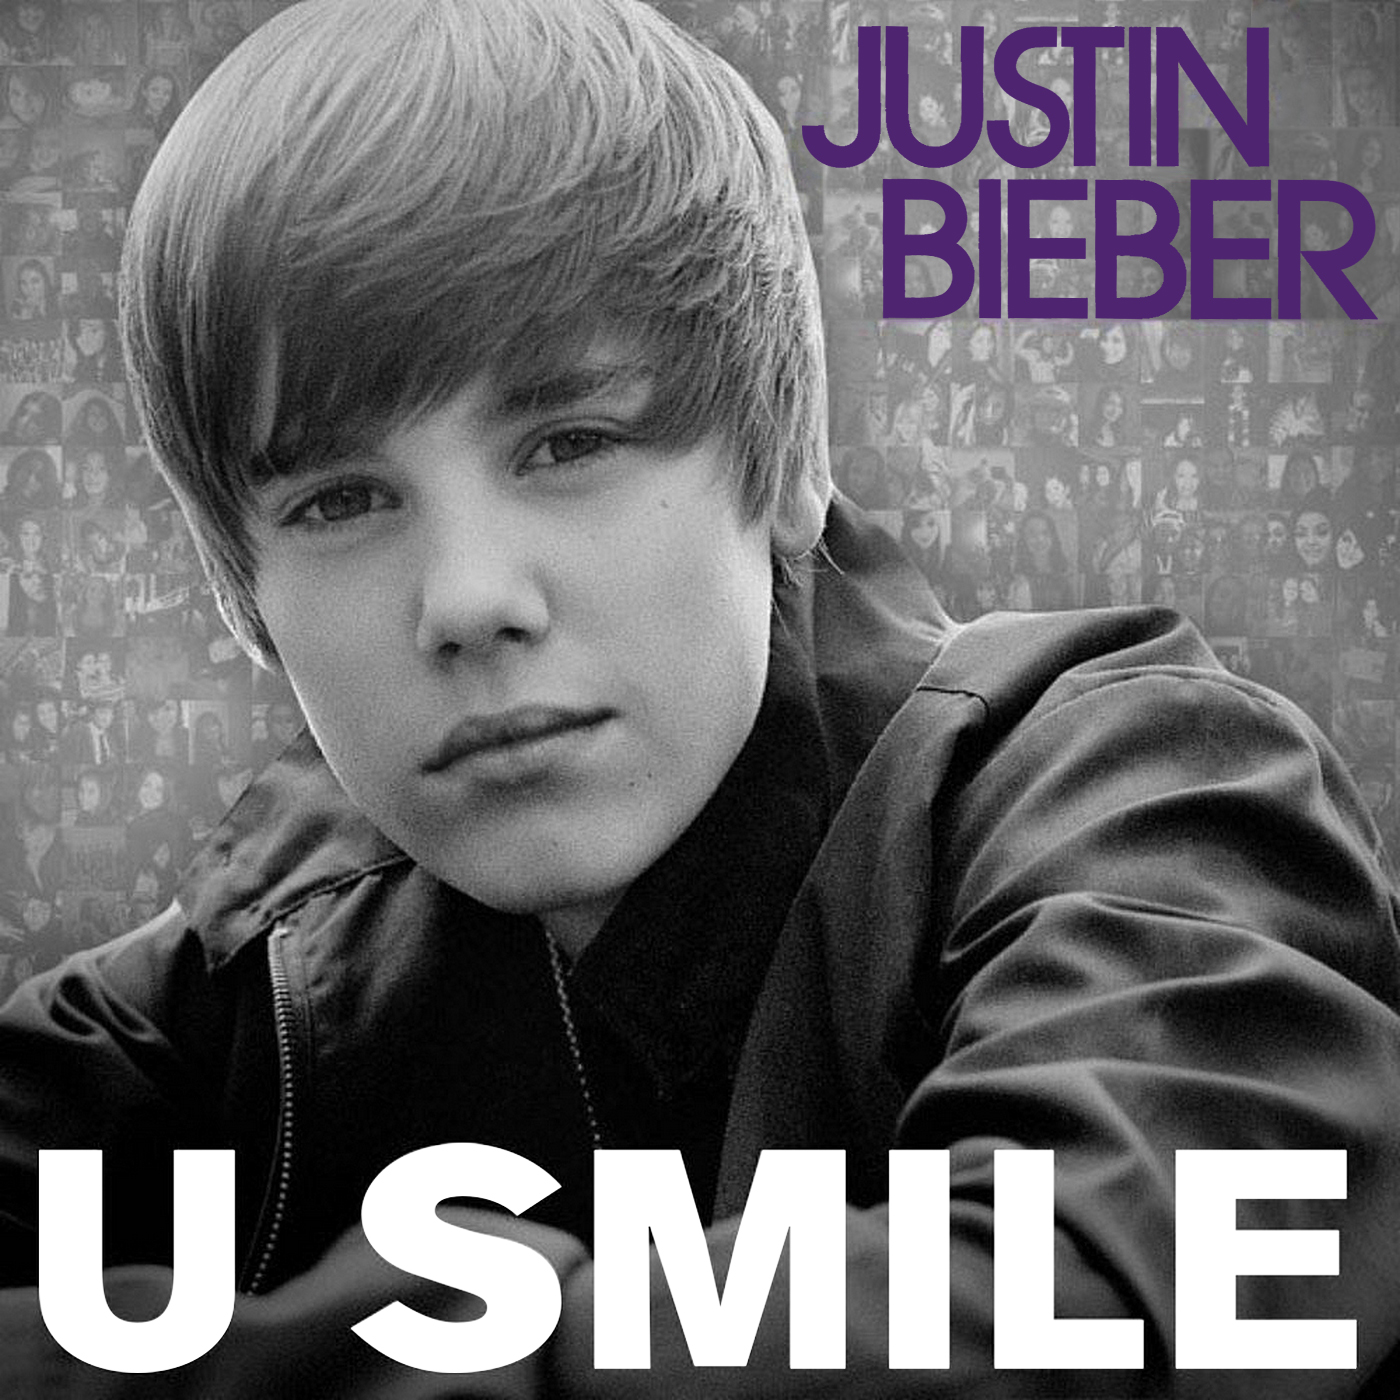 Justin Bieber, Sing Wiki